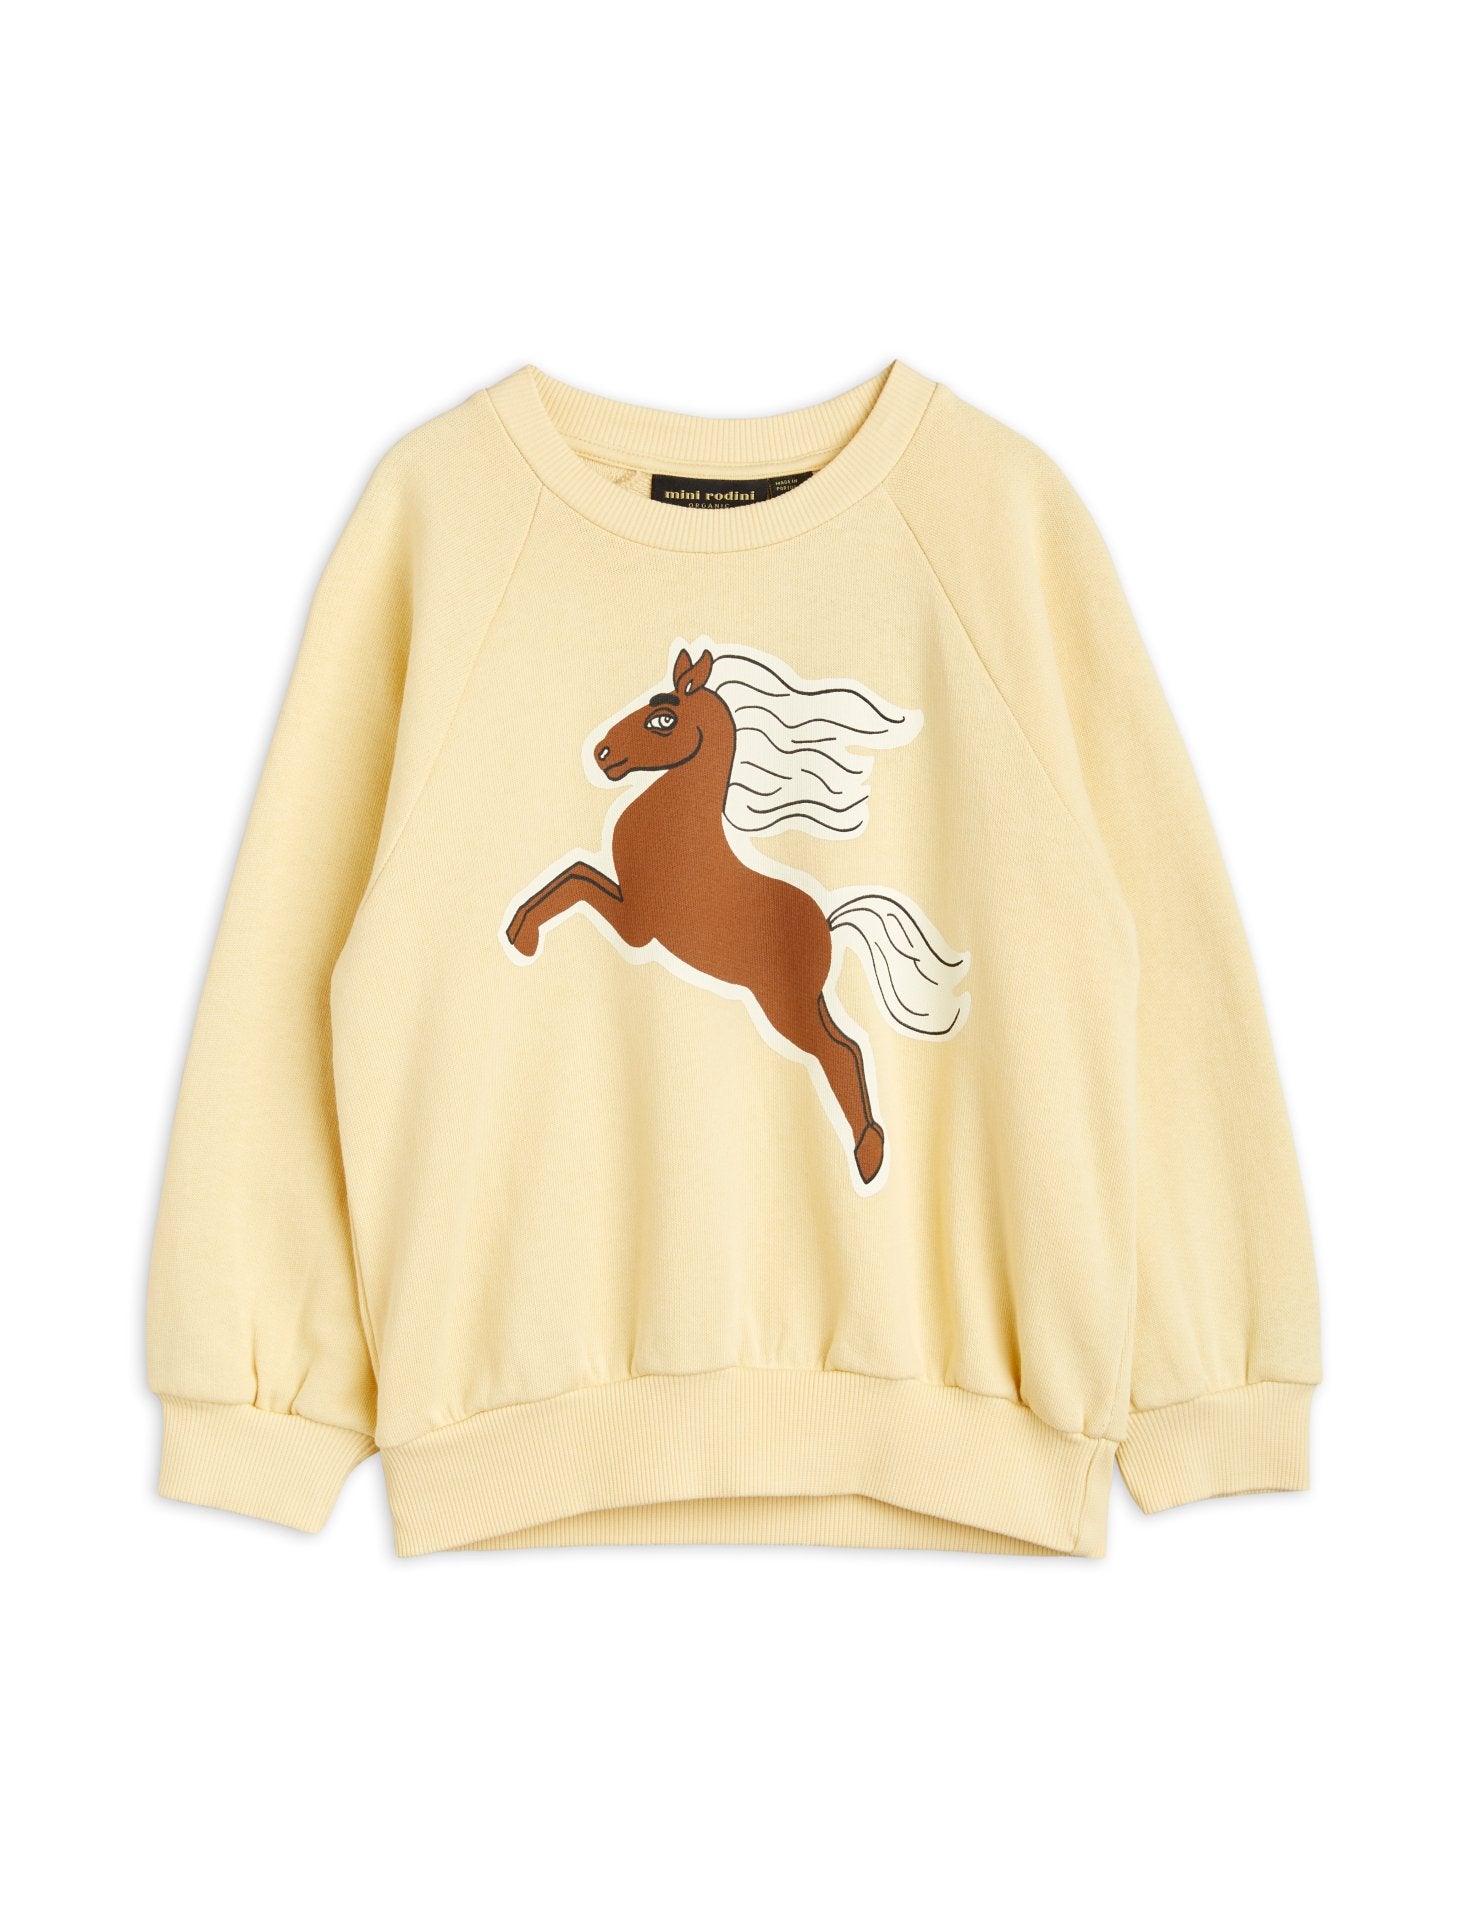 Horses sp sweatshirt